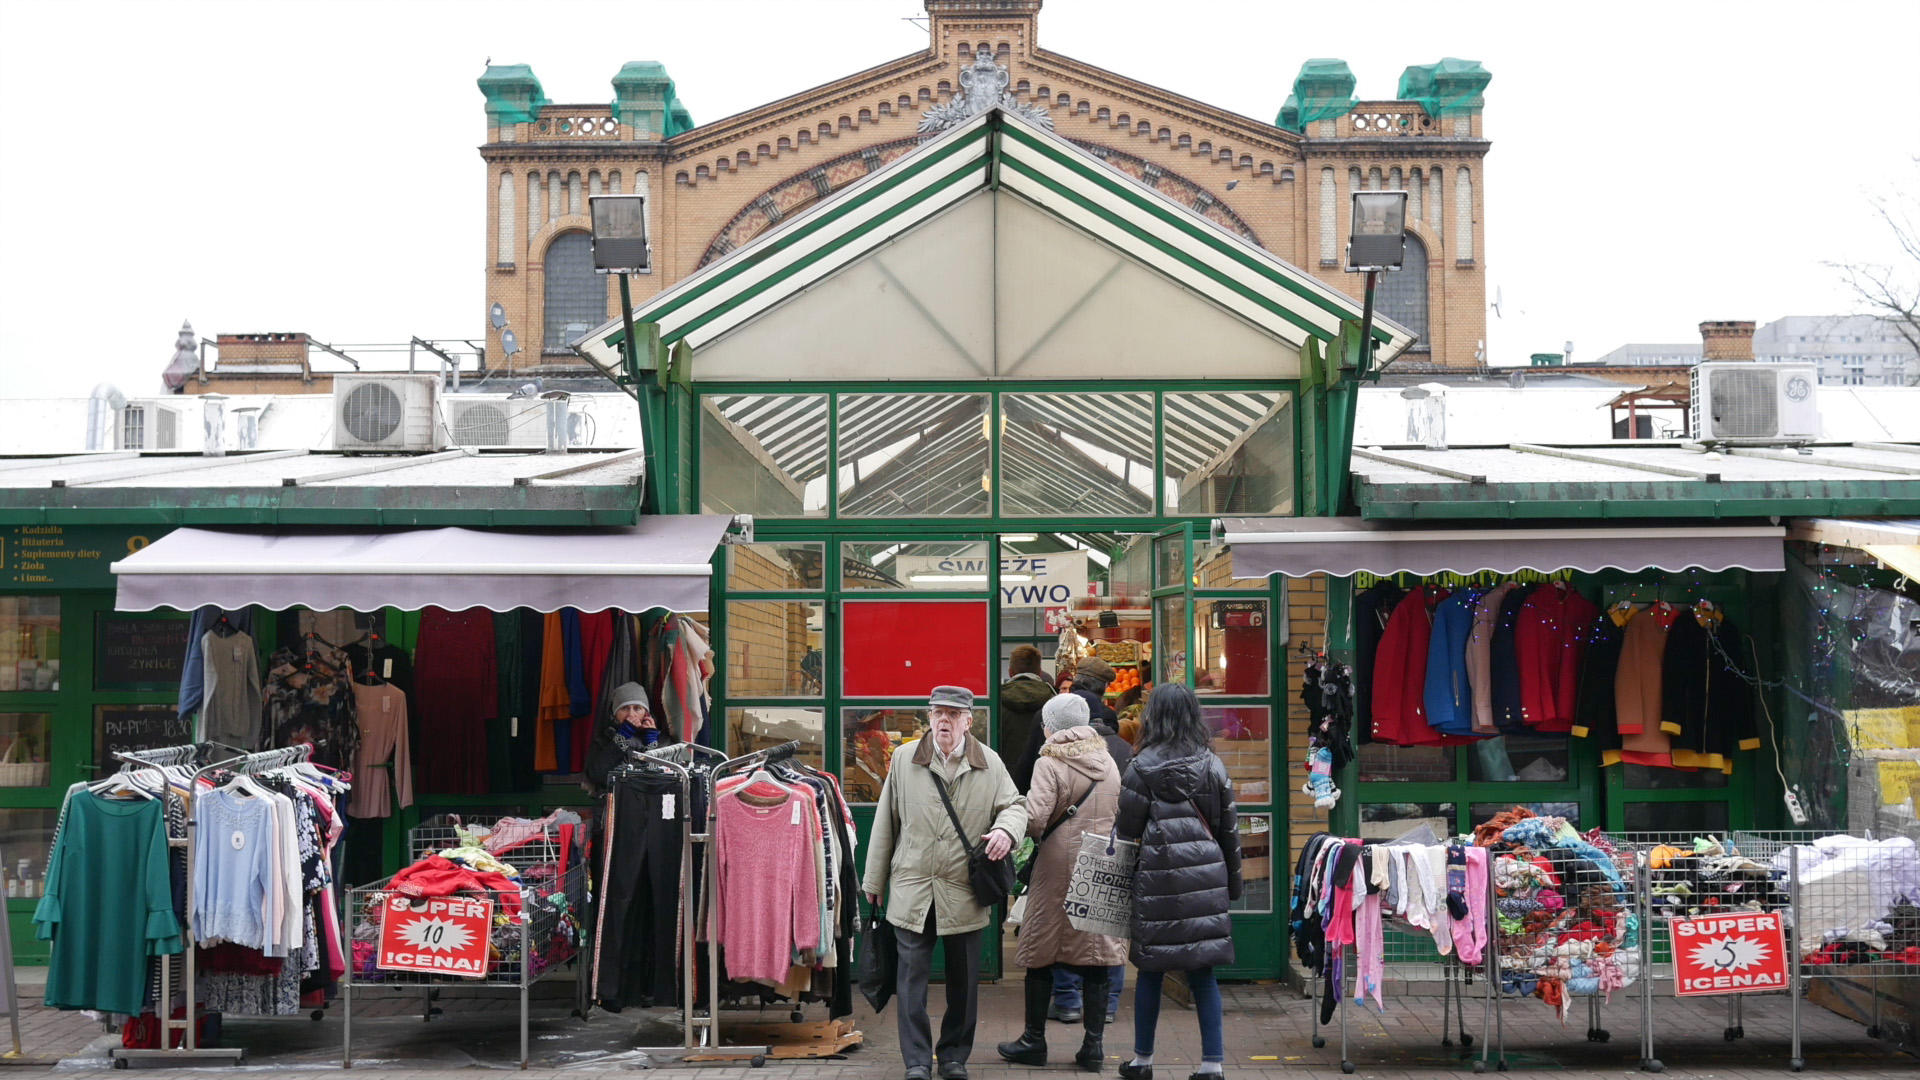 Market scene, Warsaw